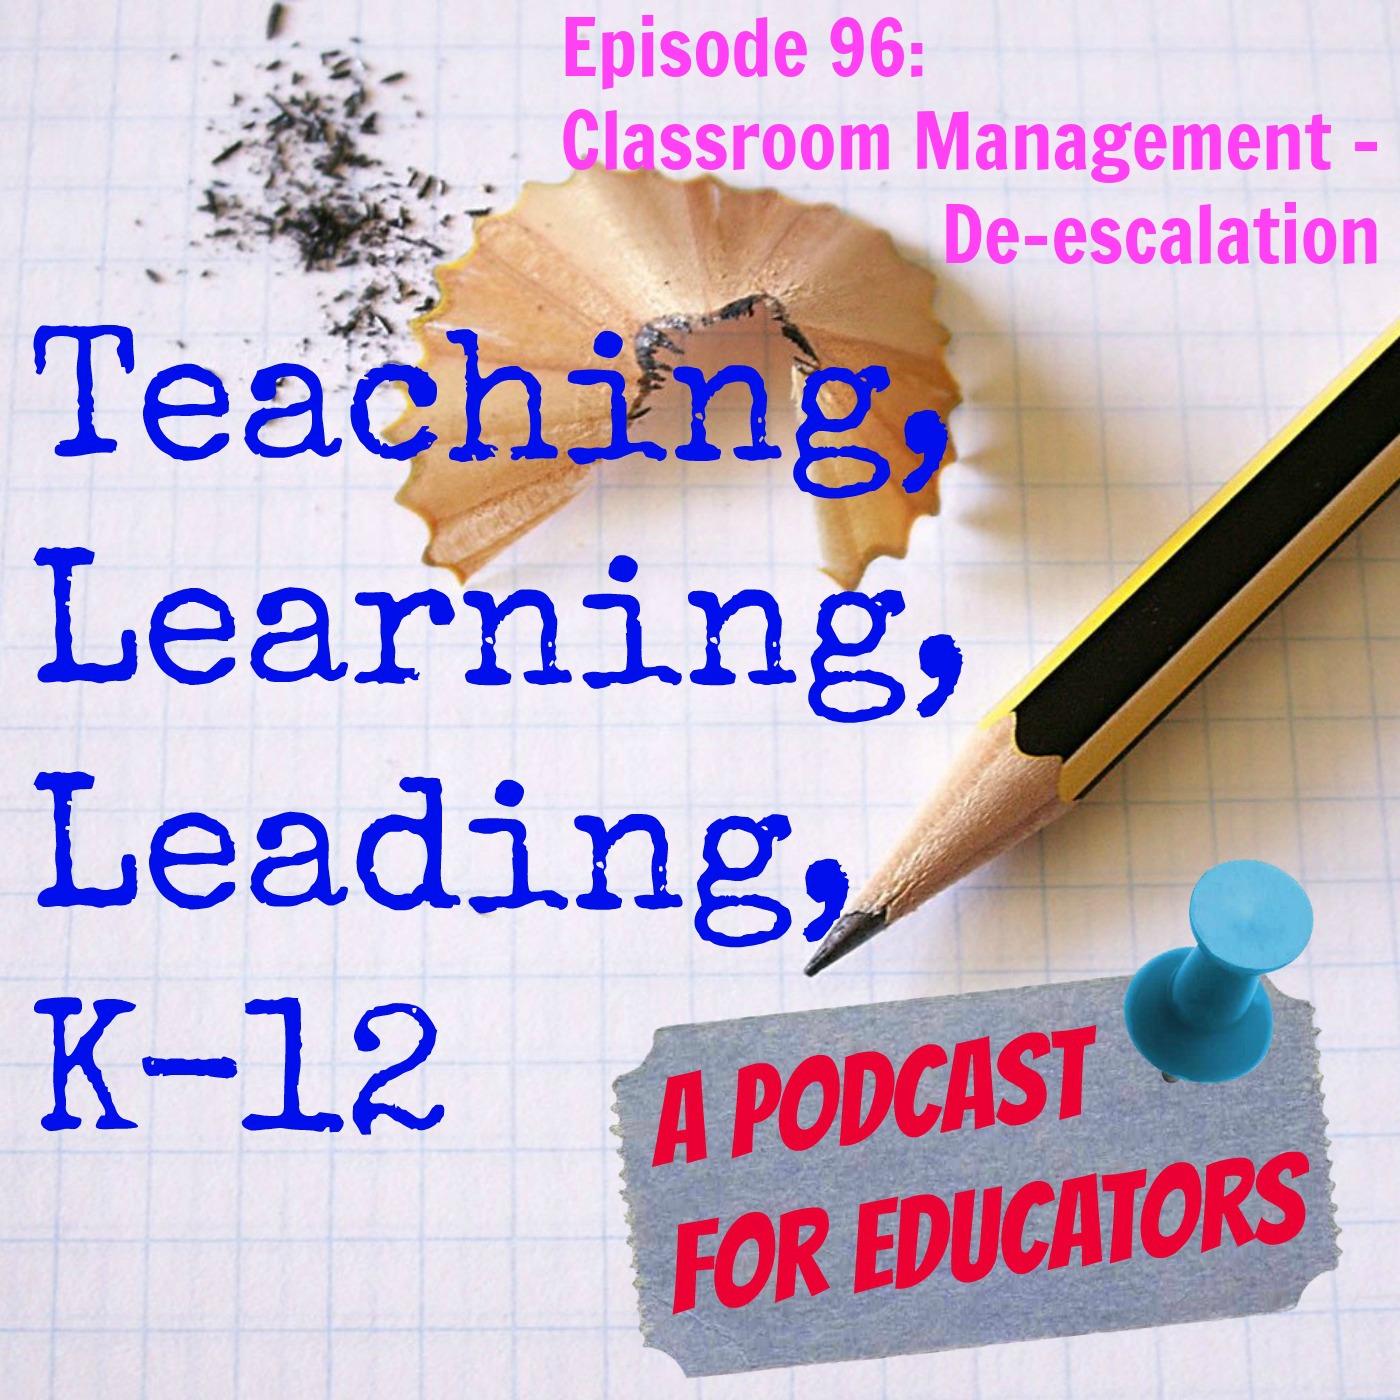 Episode 96: Classroom Management - De-escalation Image